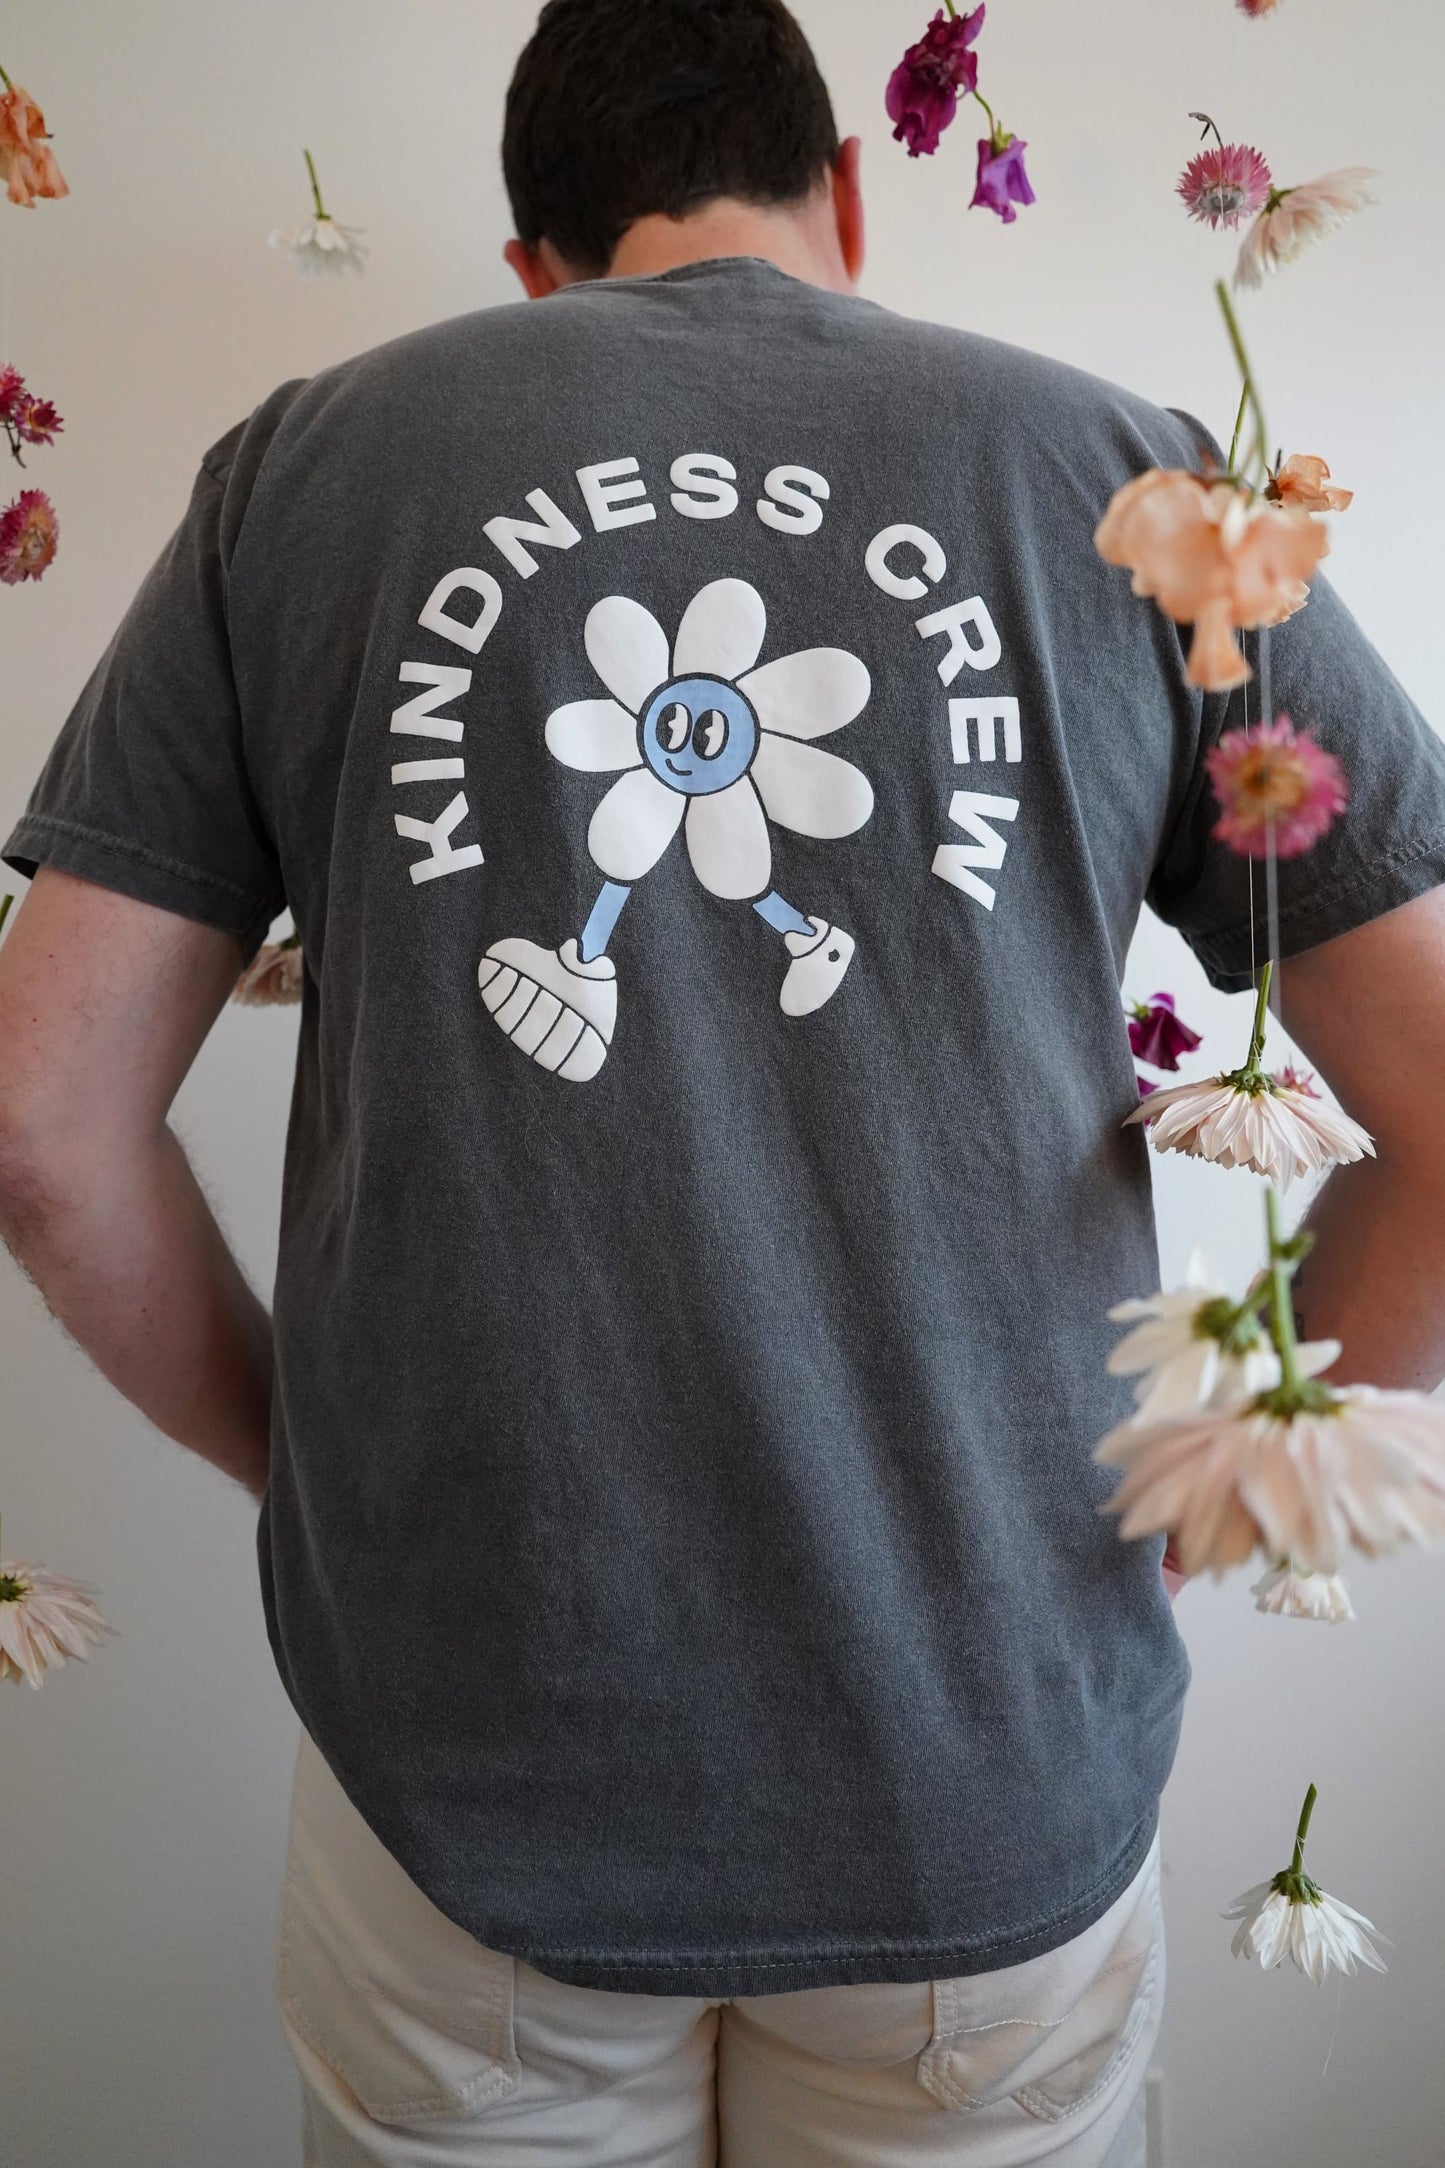 Kindness Crew T-Shirt